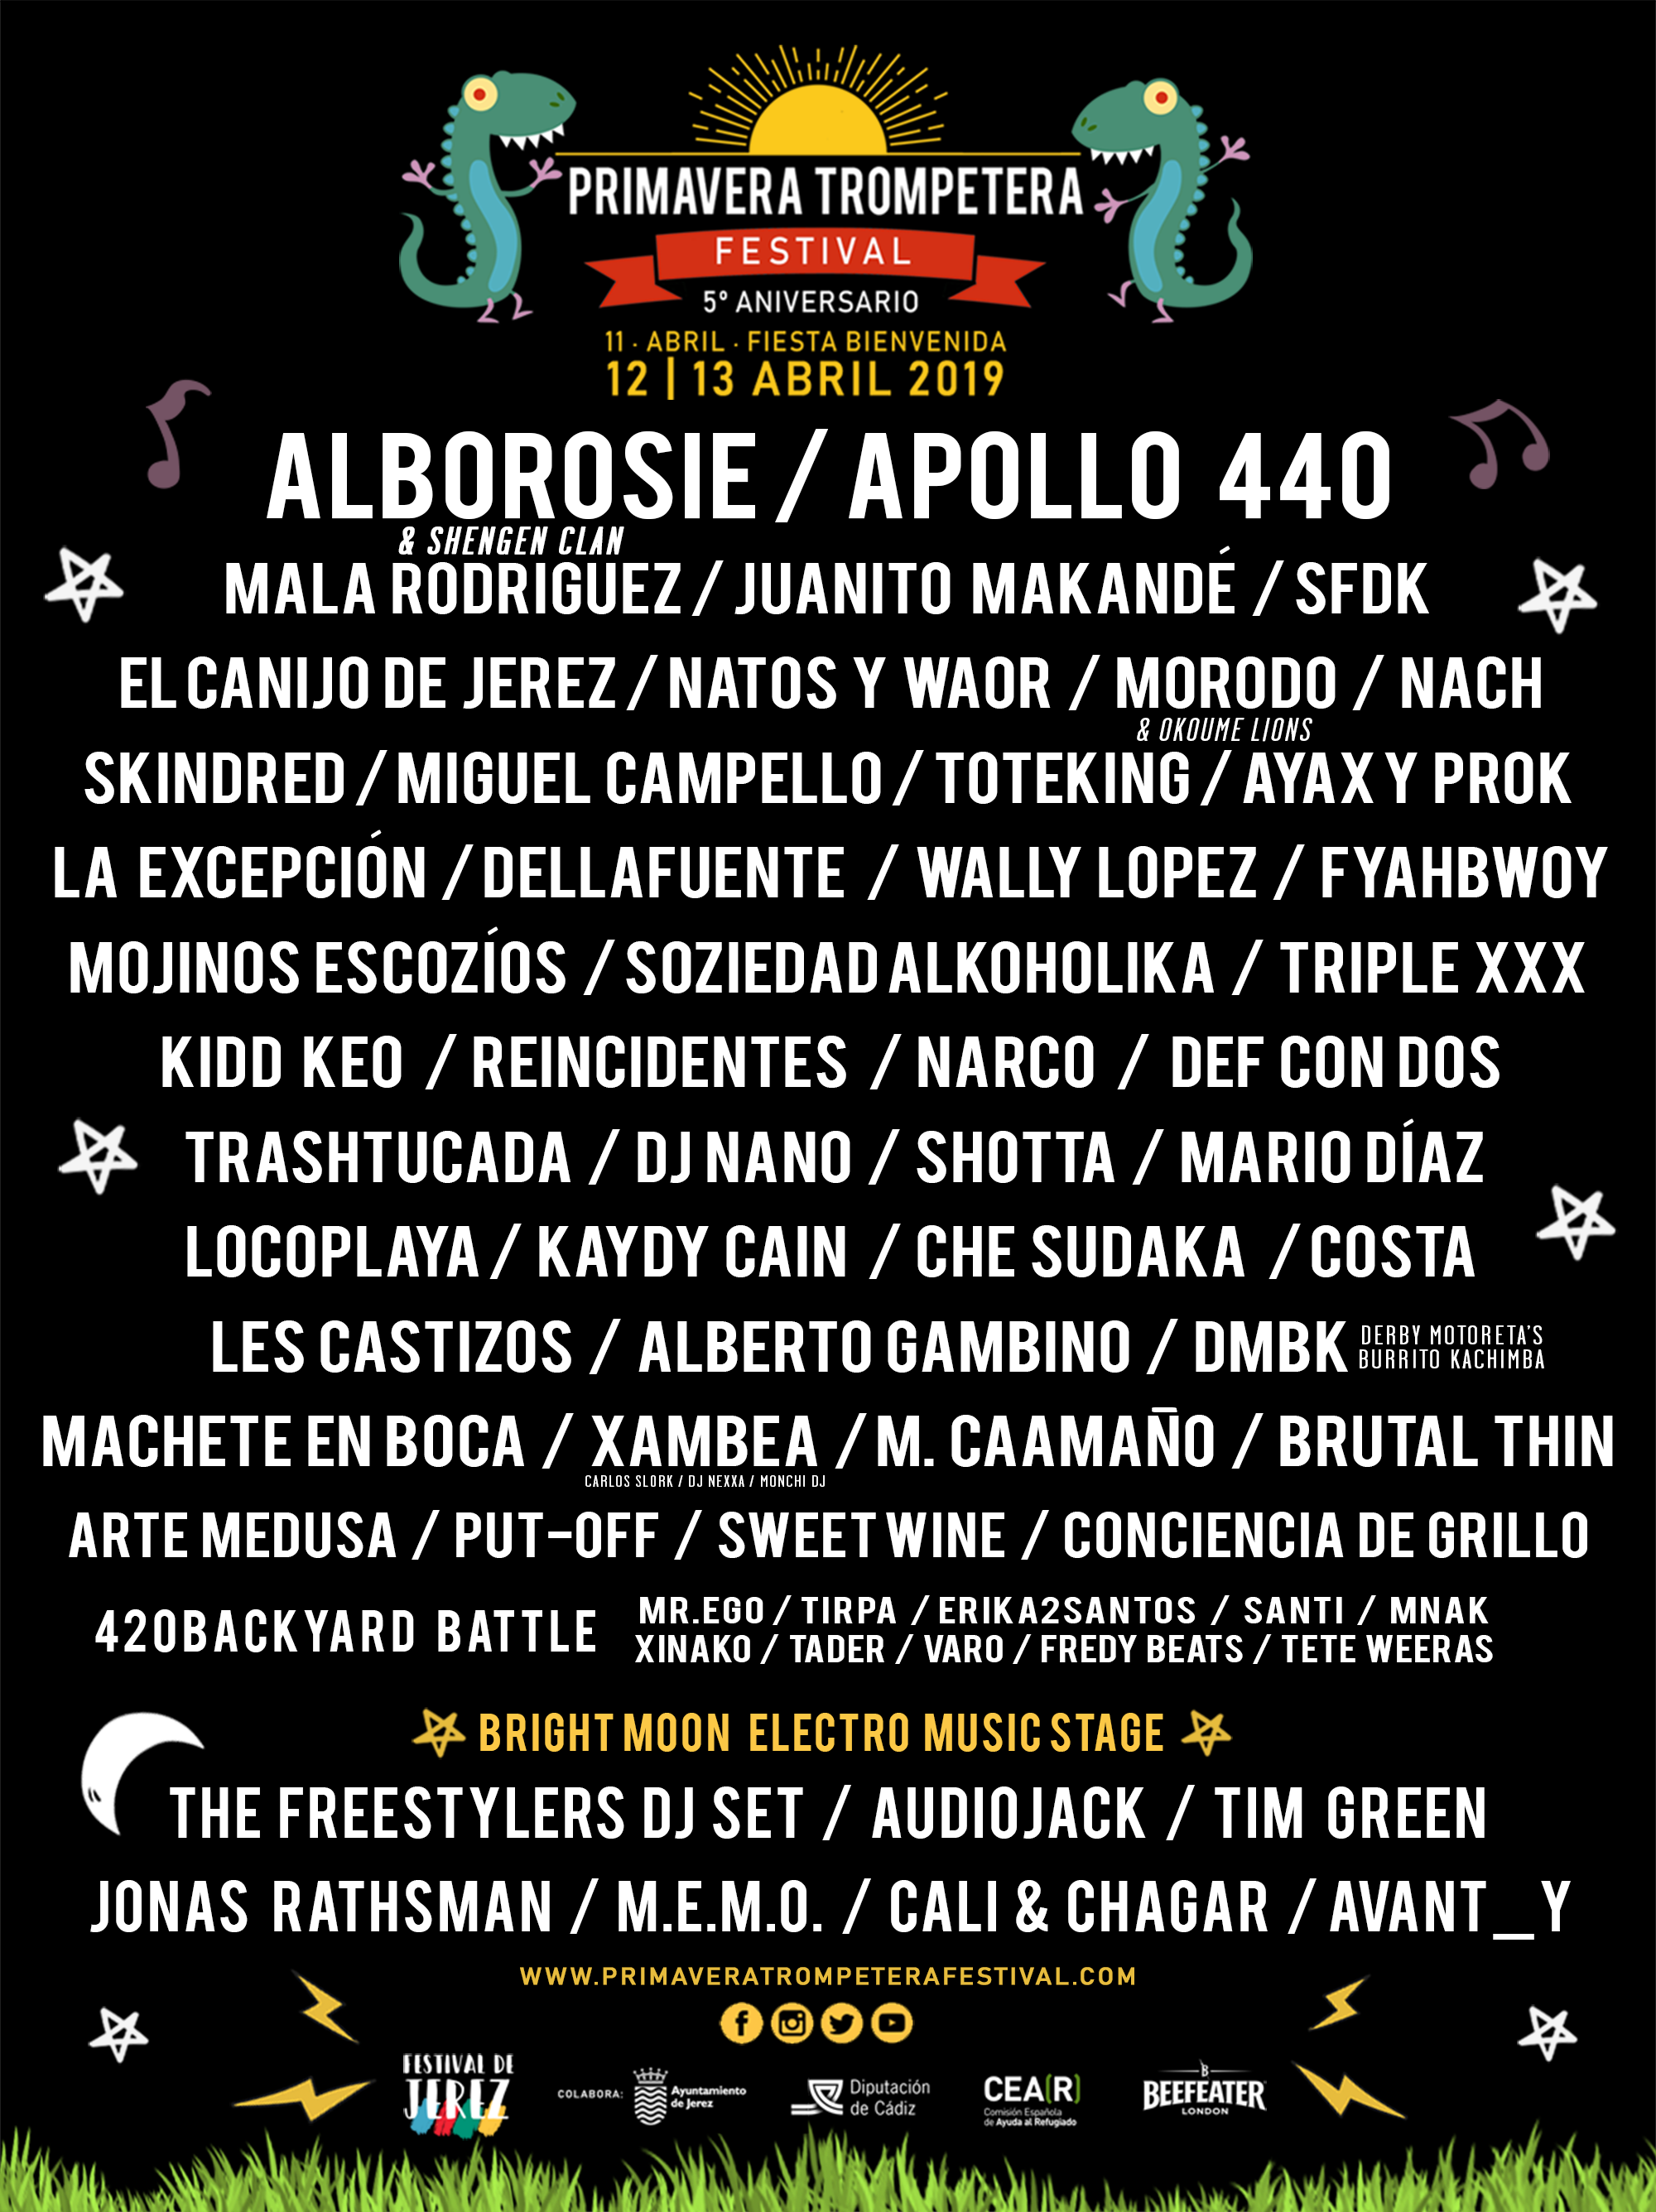 Cartel del Primavera Trompetera Festival 2019.